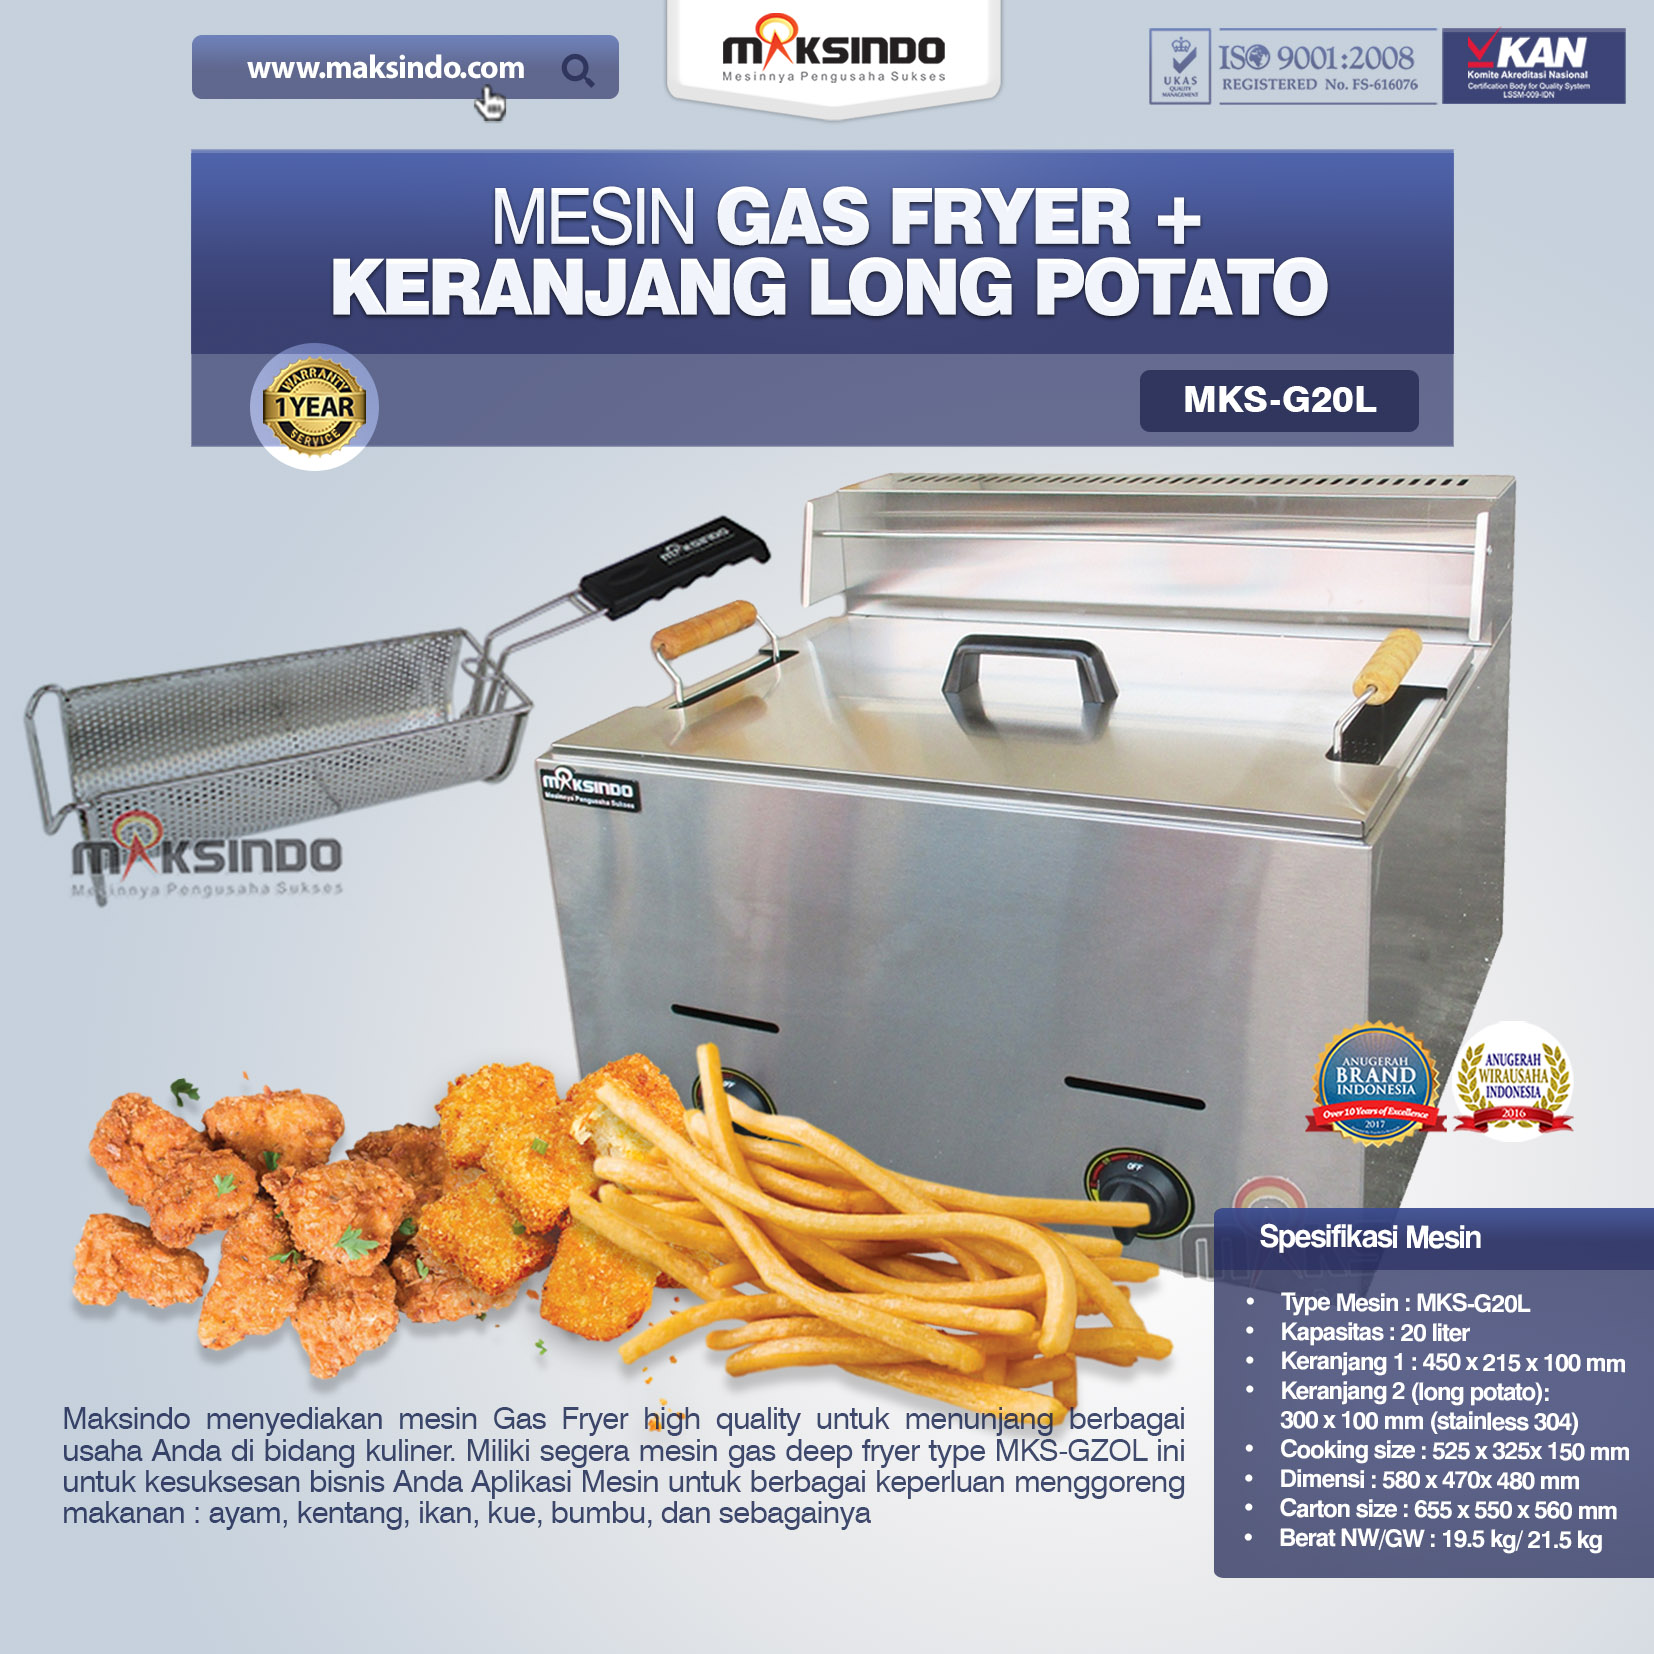 Jual Mesin Gas Fryer MKS-G20L + Keranjang di Pekanbaru